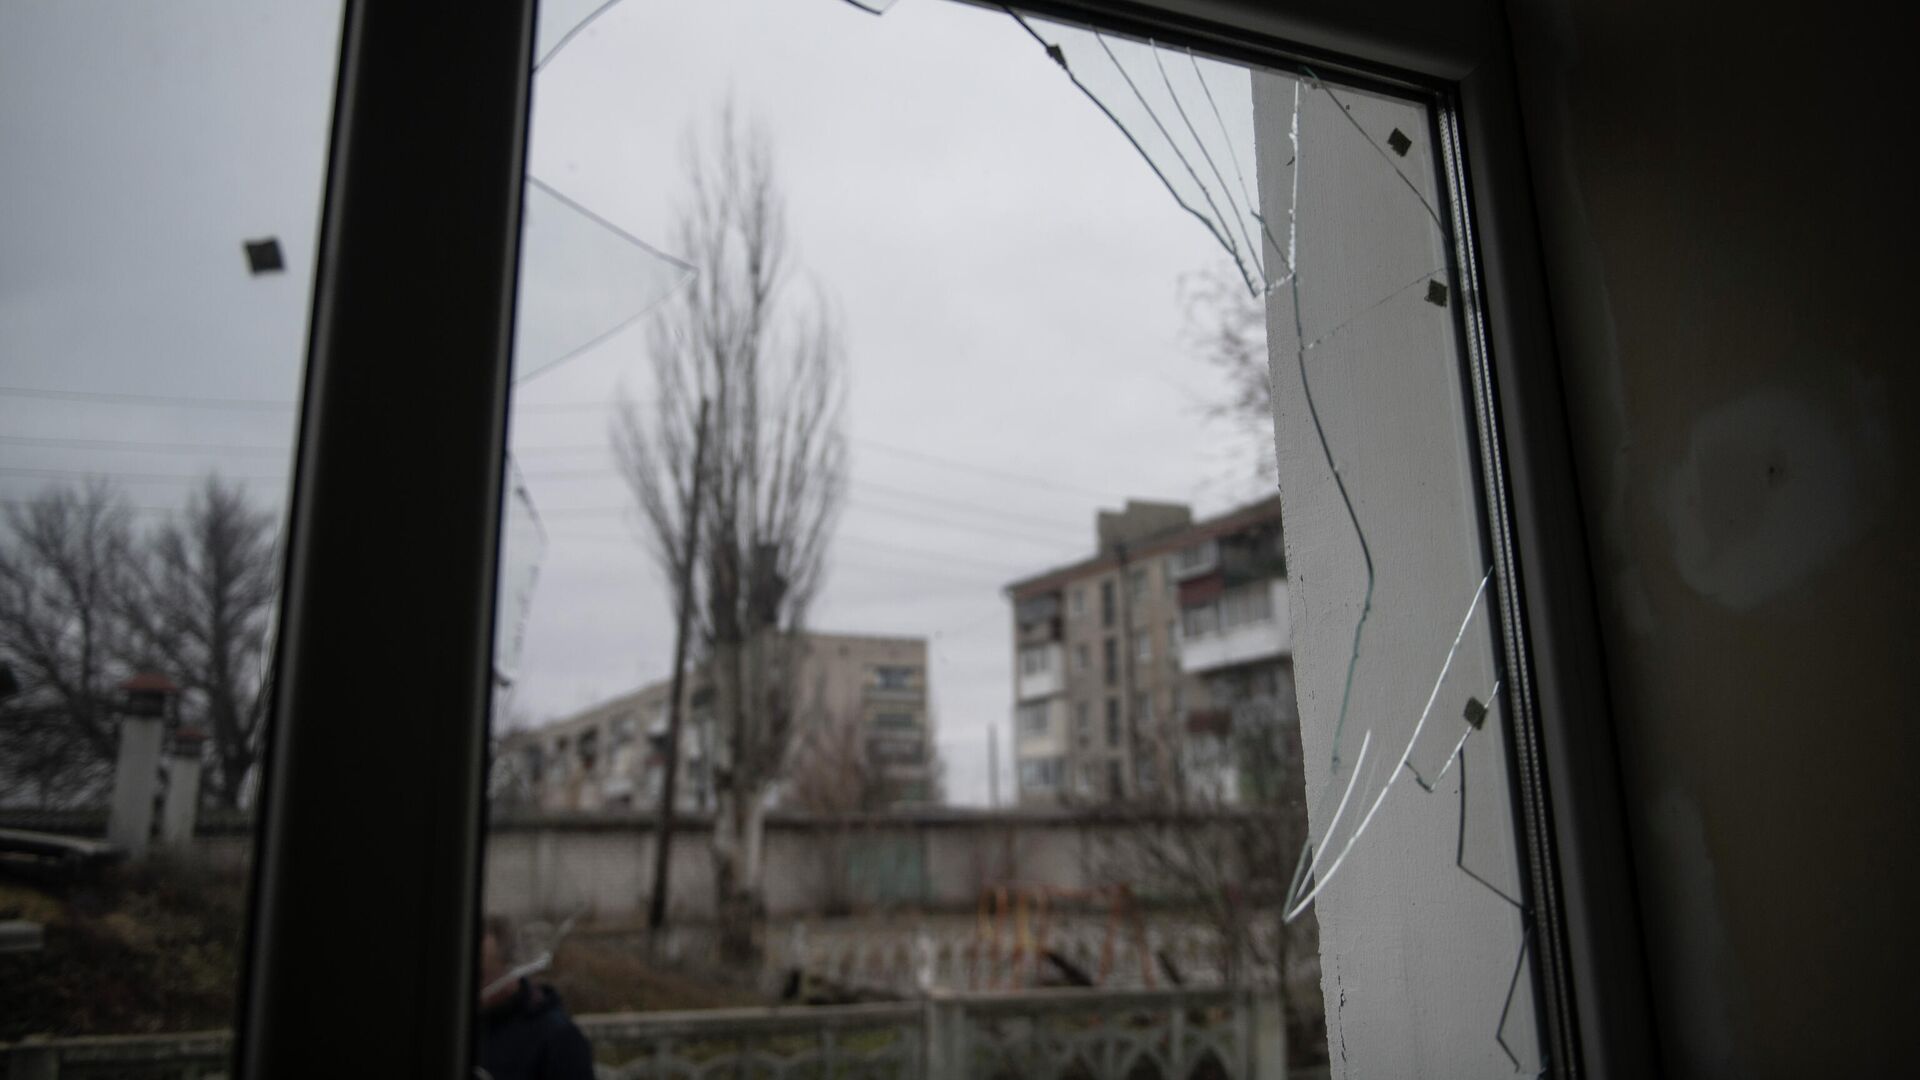 Разбитое окно в детском саду в станице Луганской, пострадавшем в результате обстрела - РИА Новости, 1920, 09.03.2022